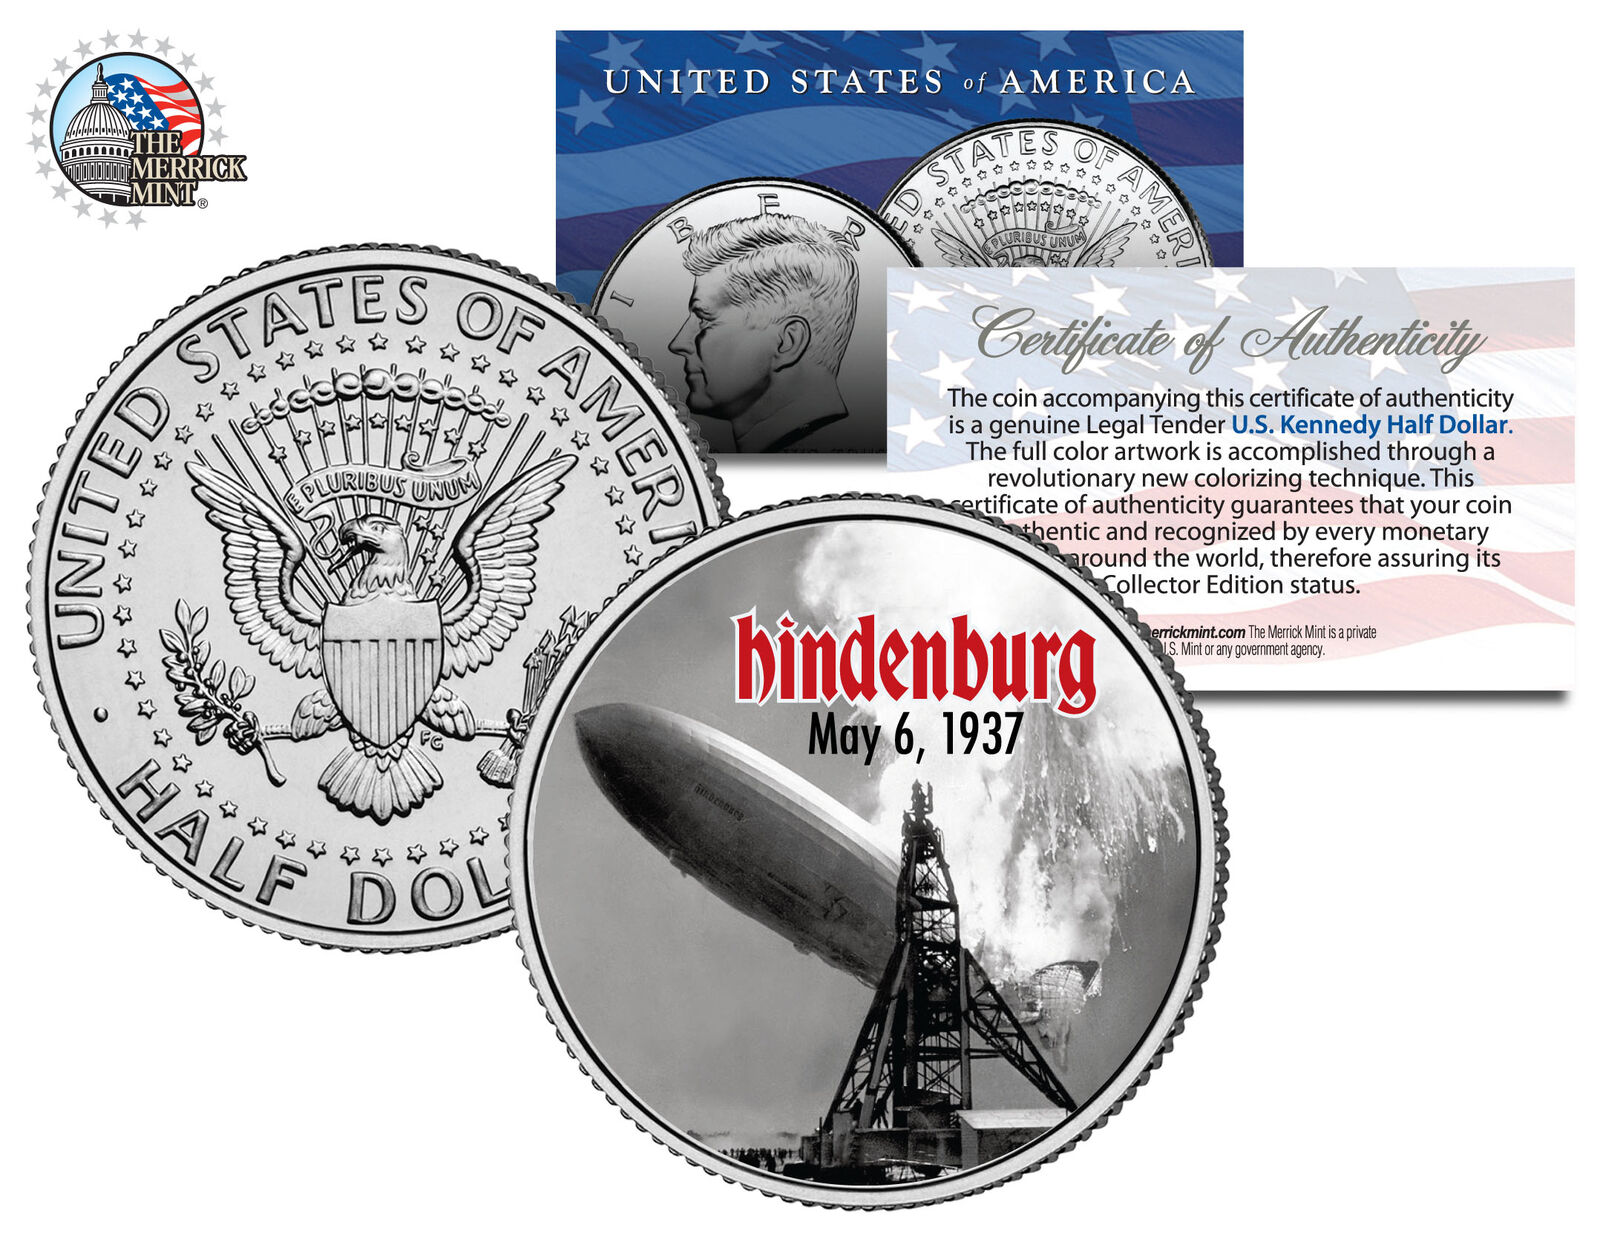 HINDENBURG LZ-129 AIRSHIP DISASTER * May 6, 1937 * JFK Kennedy Half Dollar Coin